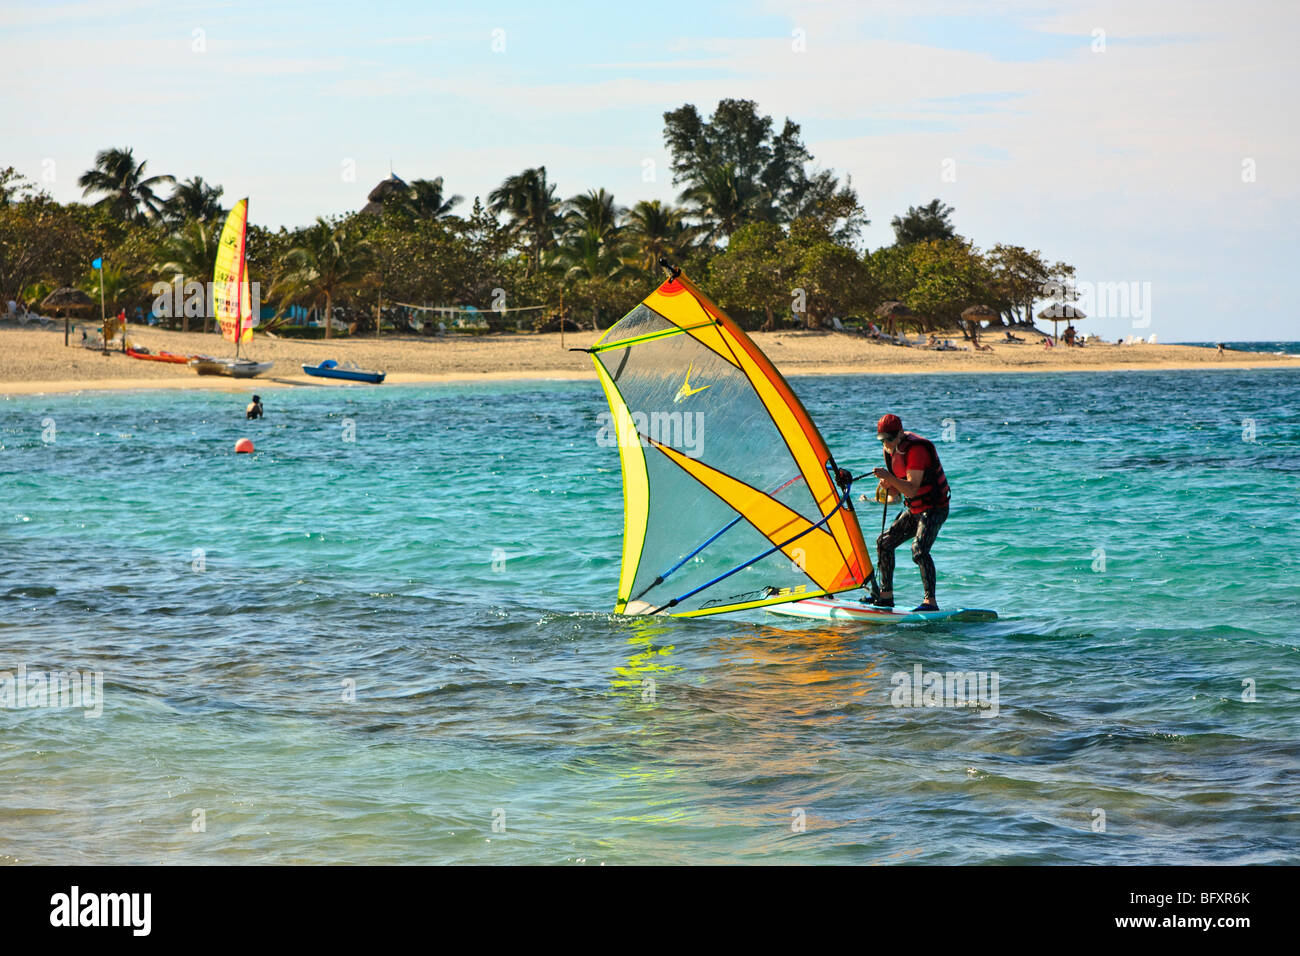 Altos funcionarios de windsurf en el Caribe entre arrecifes de coral Foto de stock